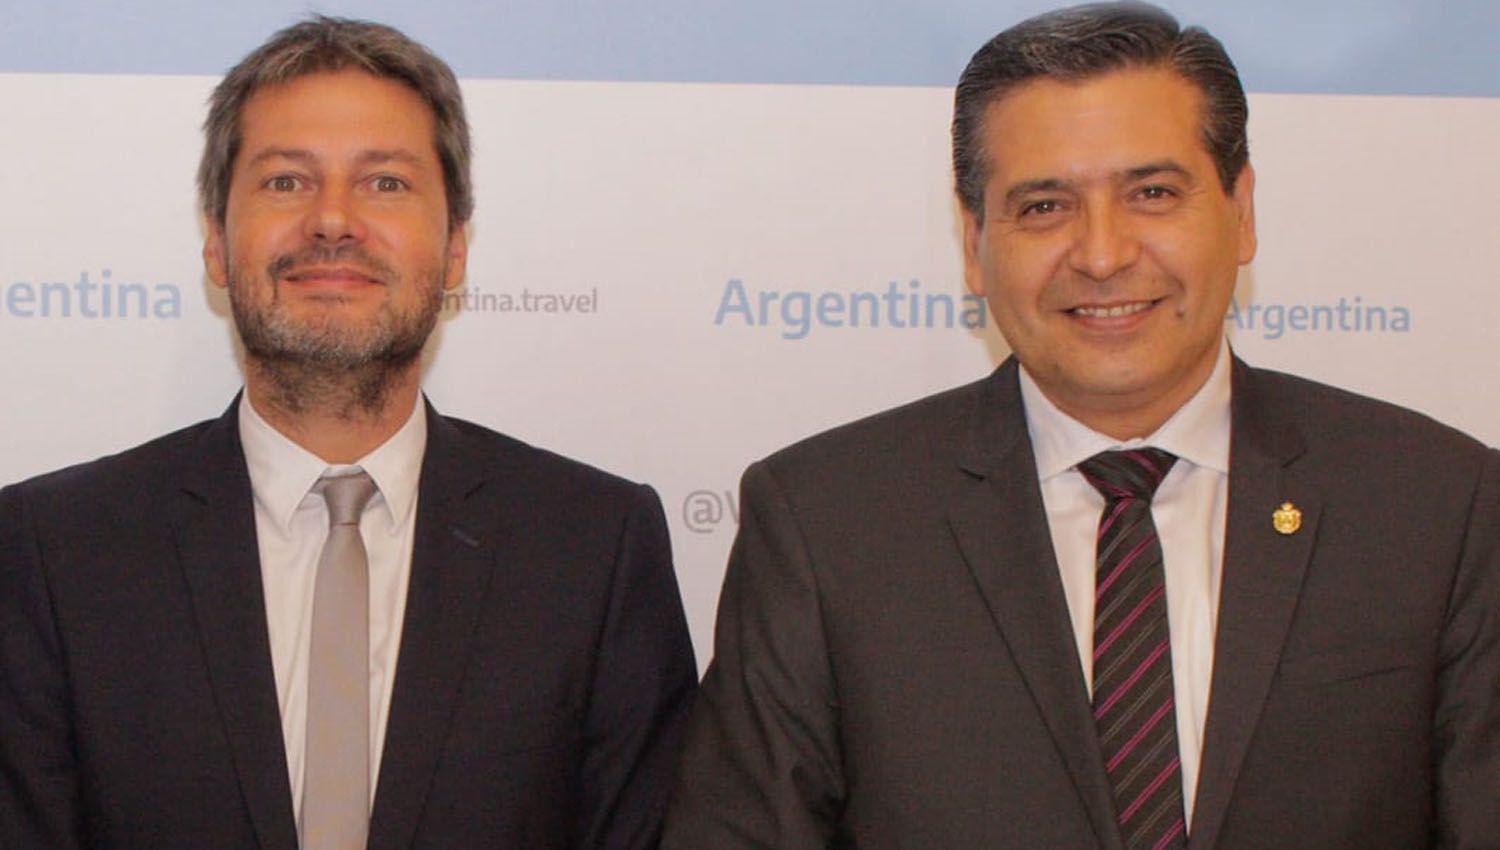 Sosa destaca el inicio de la promocioacuten argentina en Espantildea y Portugal